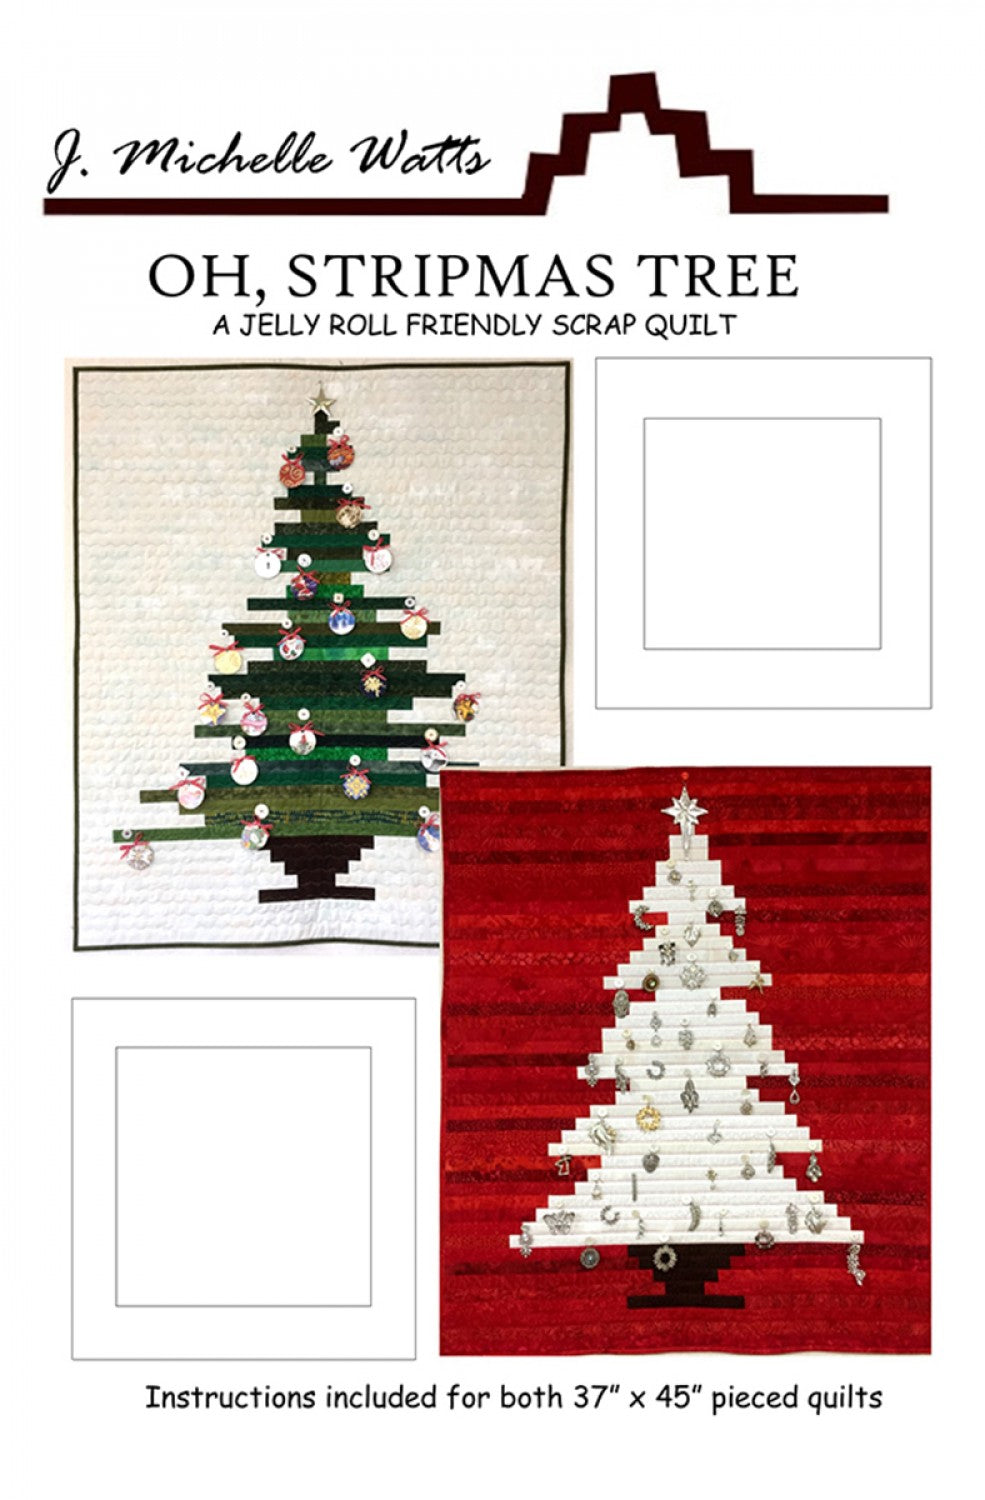 Oh, Stripmas Tree Kit